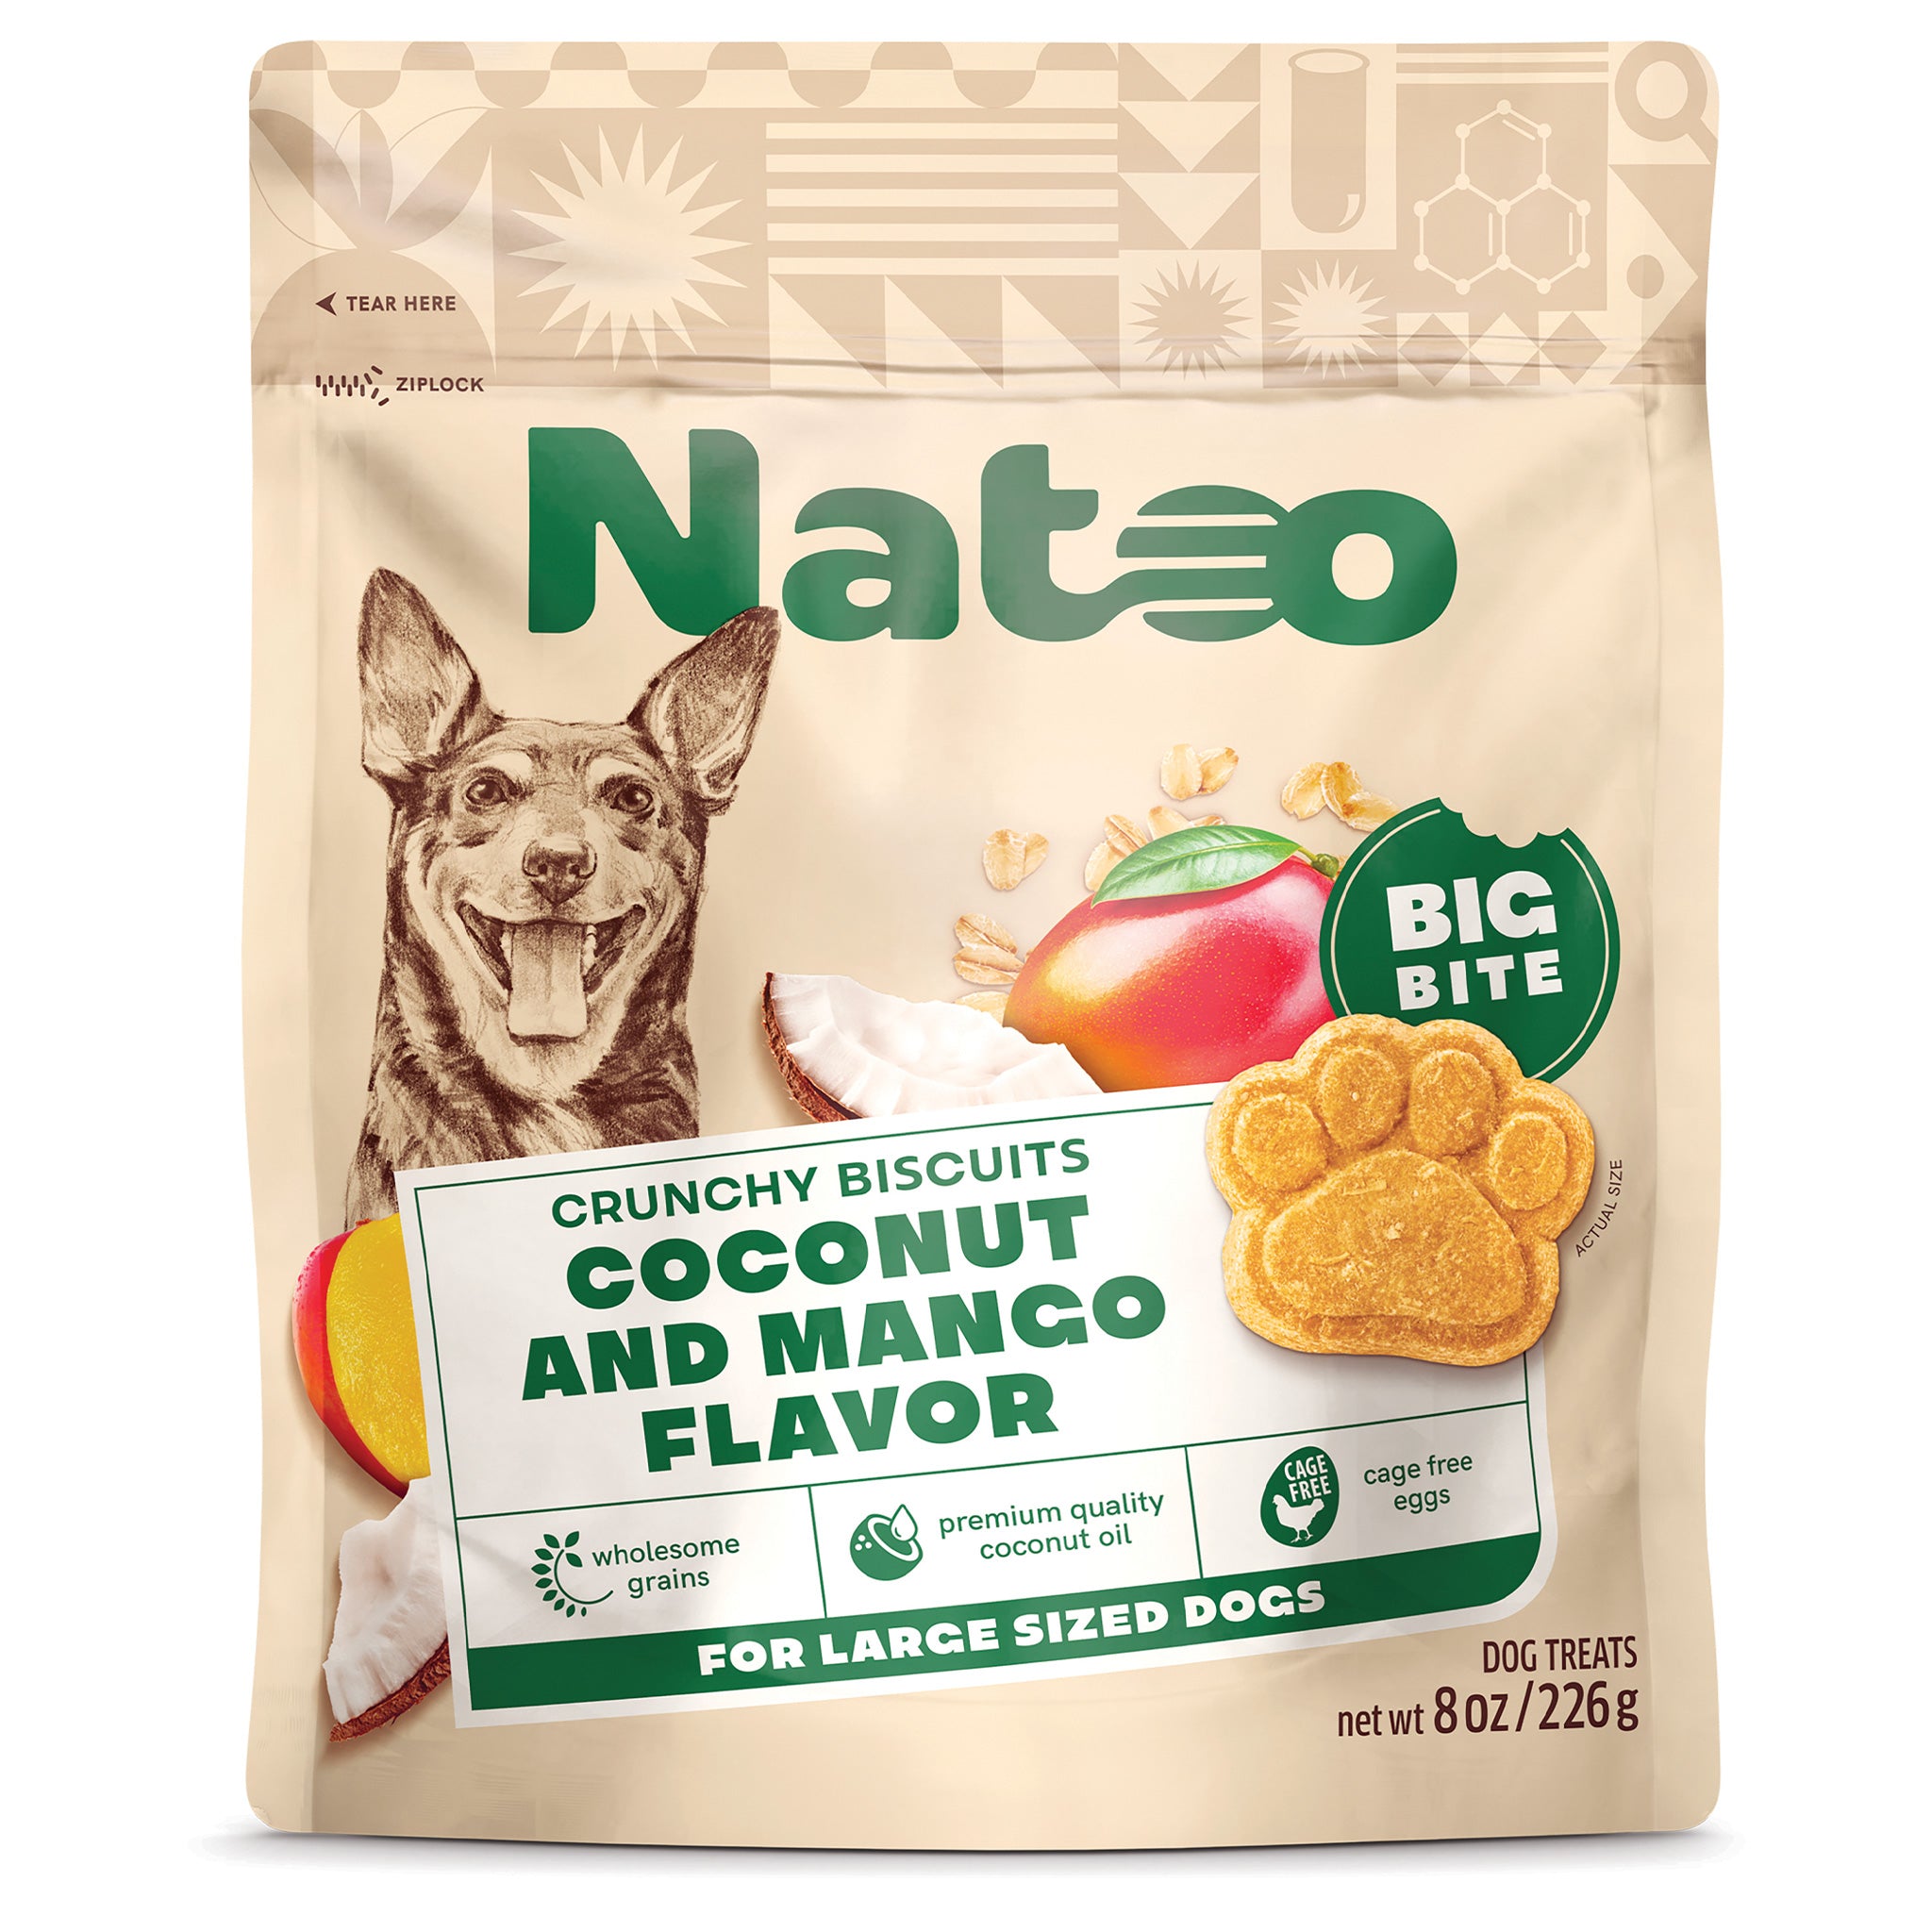 Natoo Crunchy Biscuits Coconut And Mango Flavor - BIG BITES